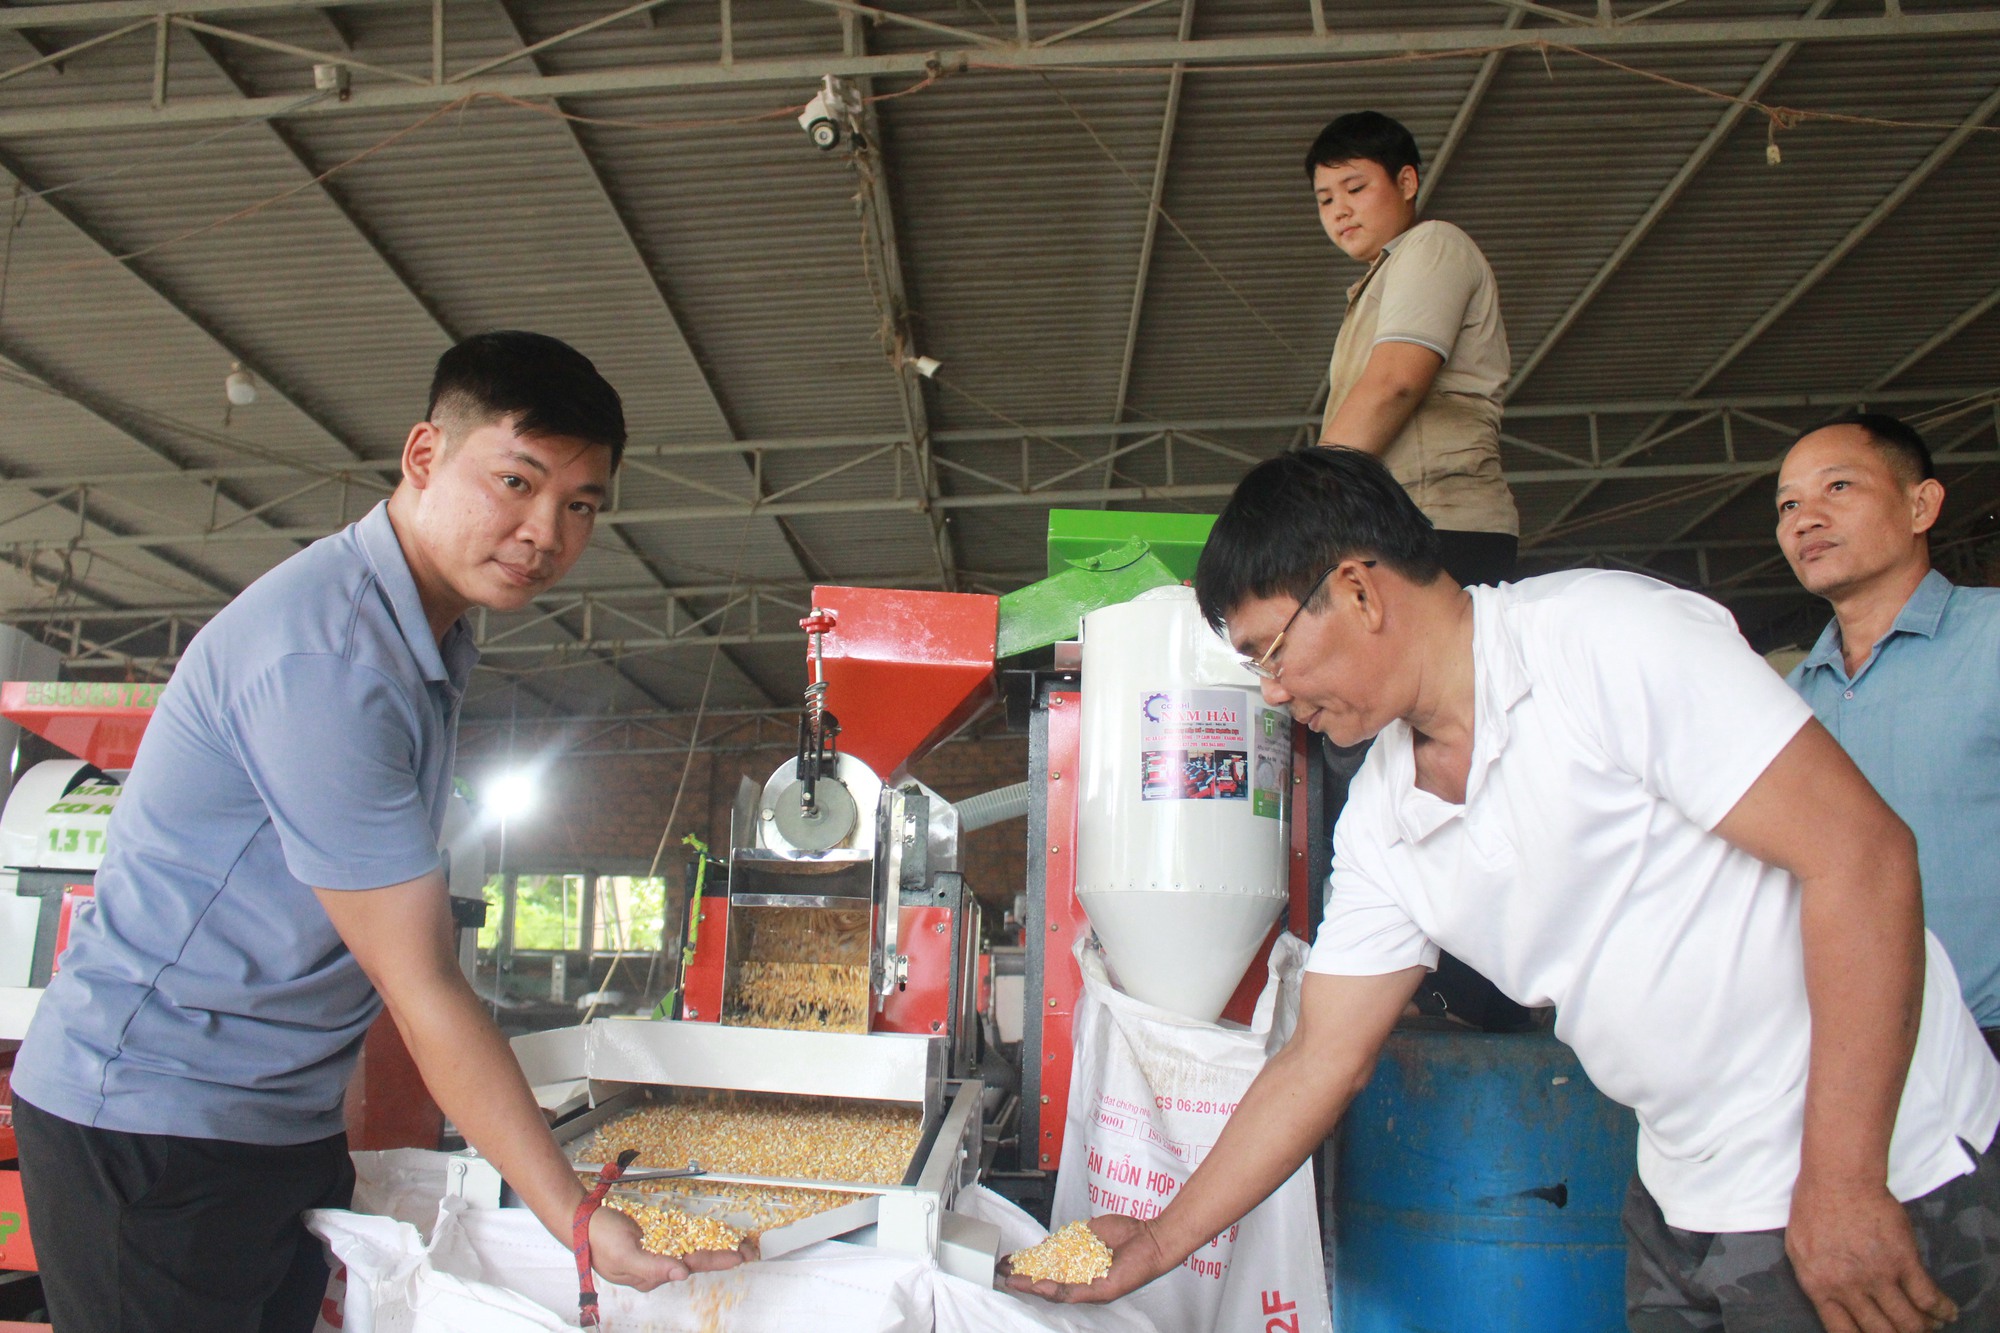 Kỹ sư 9x ở Khánh Hòa nghiên cứu chế tạo thành công máy xay bắp liên hoàn, khách hỏi mua nườm nượp - Ảnh 3.